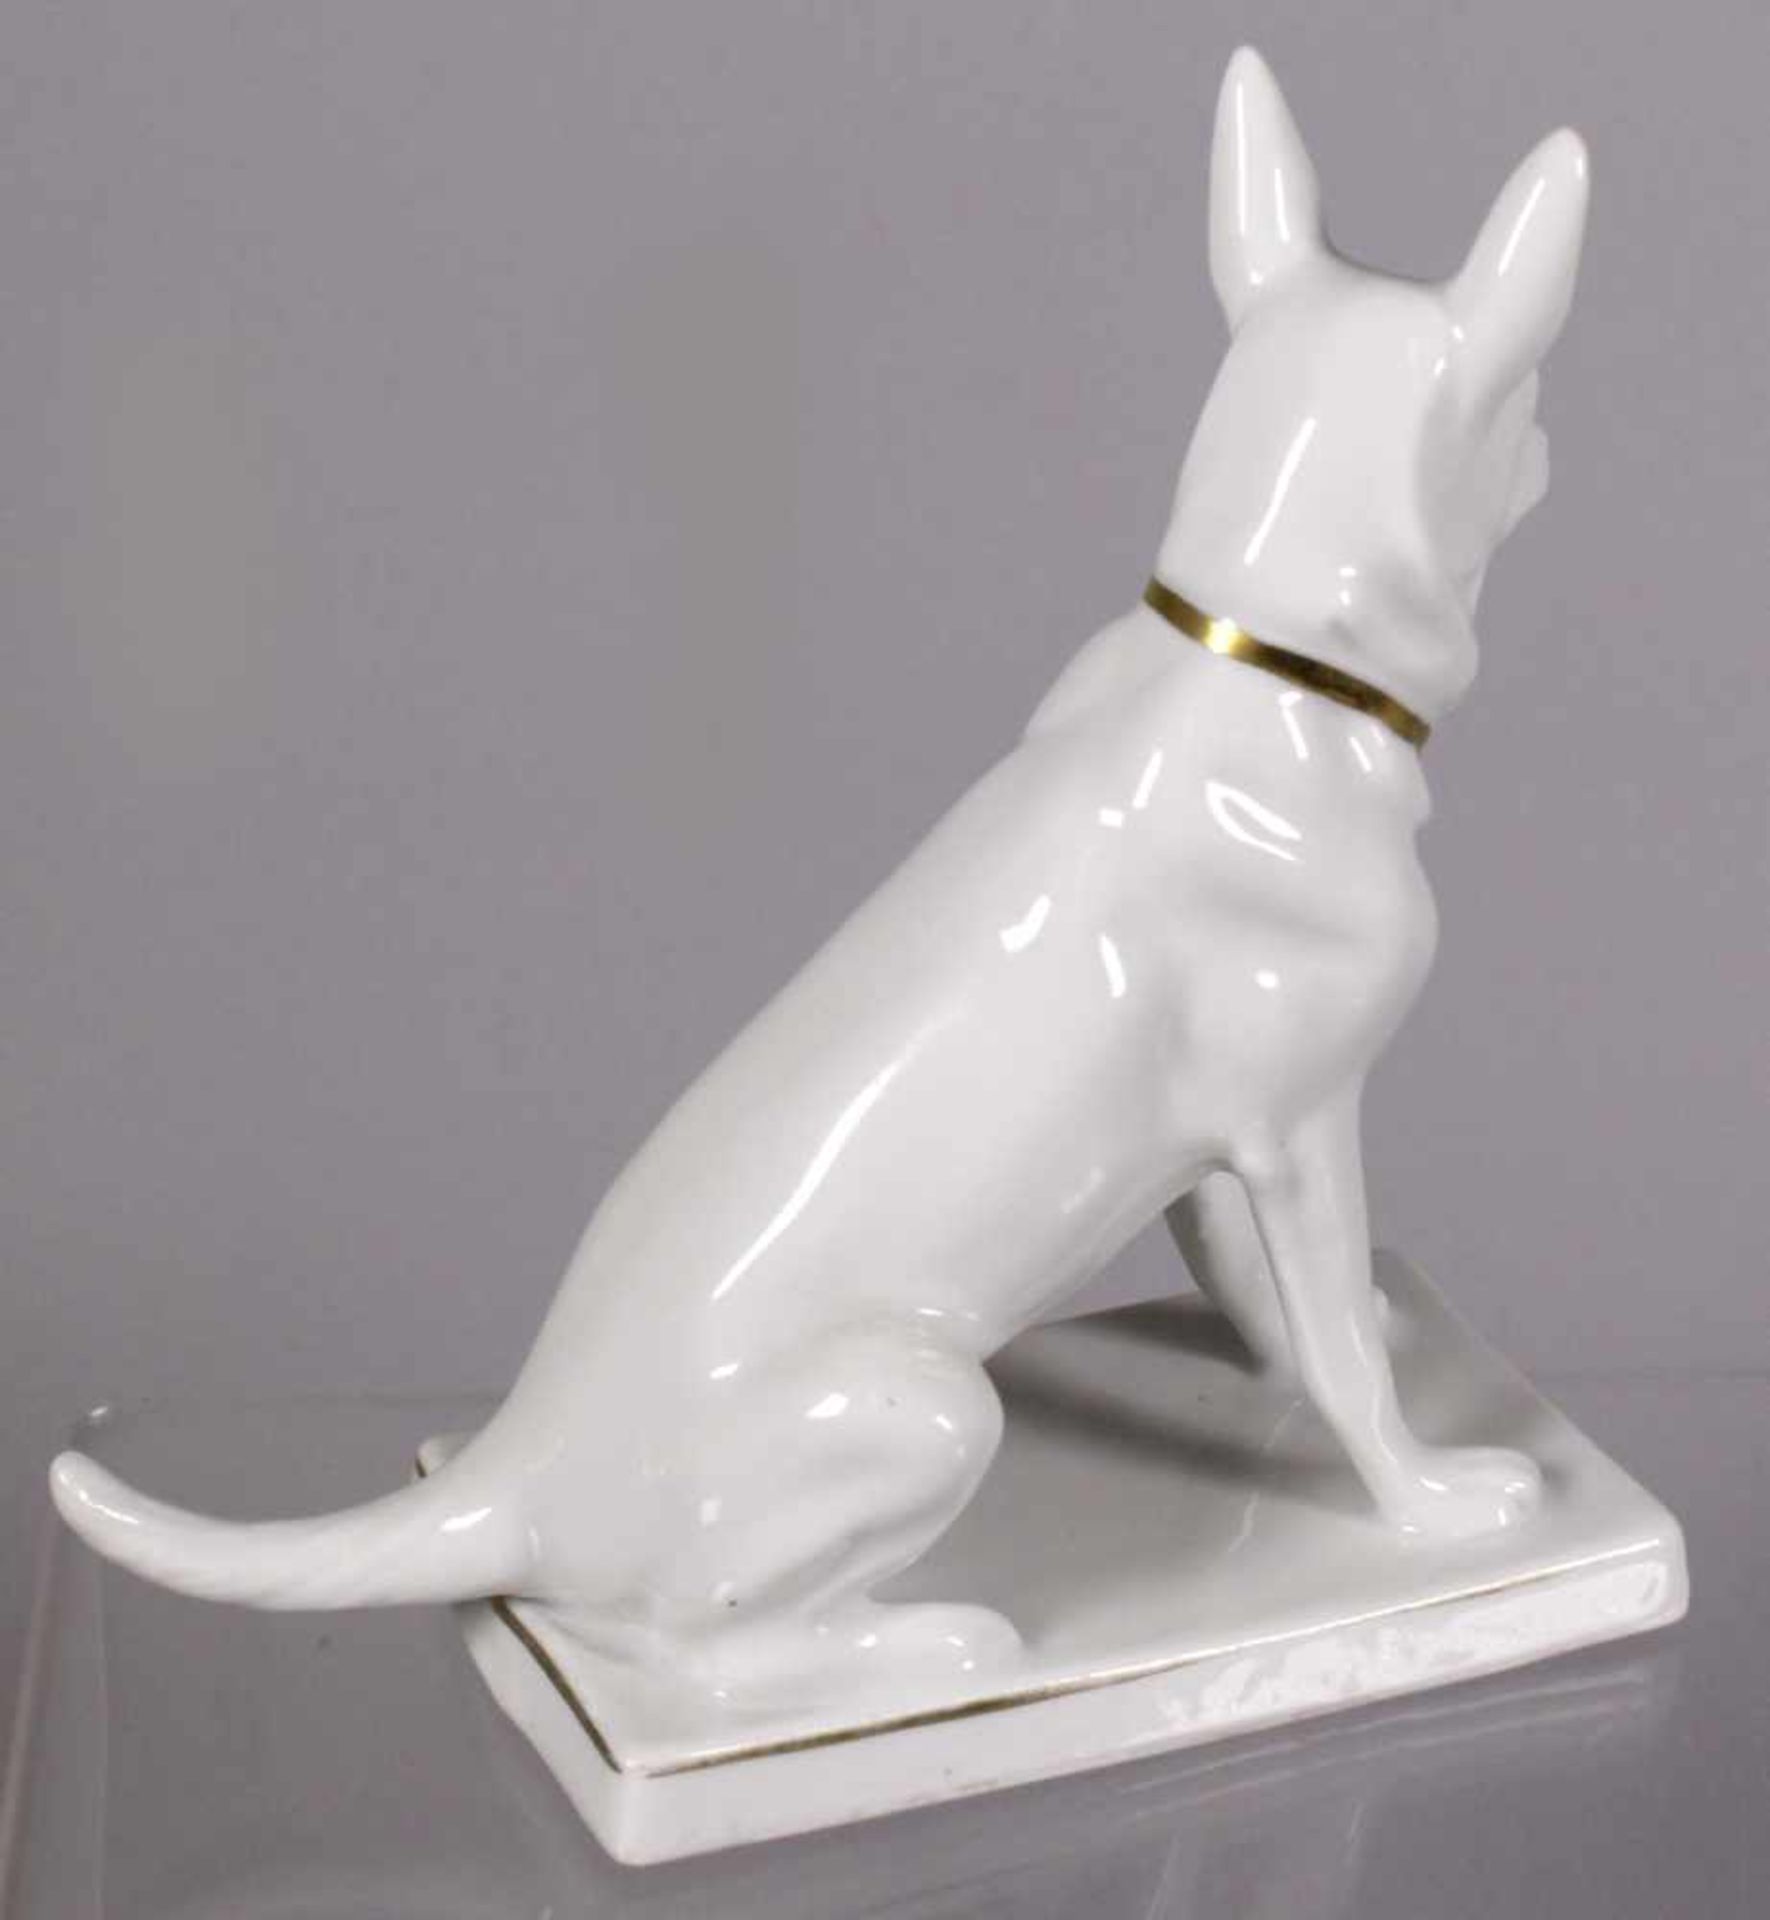 Porzellan-Tierplastik, "Hund", Neue Porzellanfabrik Tettau, um 1927-37, Mod.nr.: 12575/IV, - Bild 2 aus 3